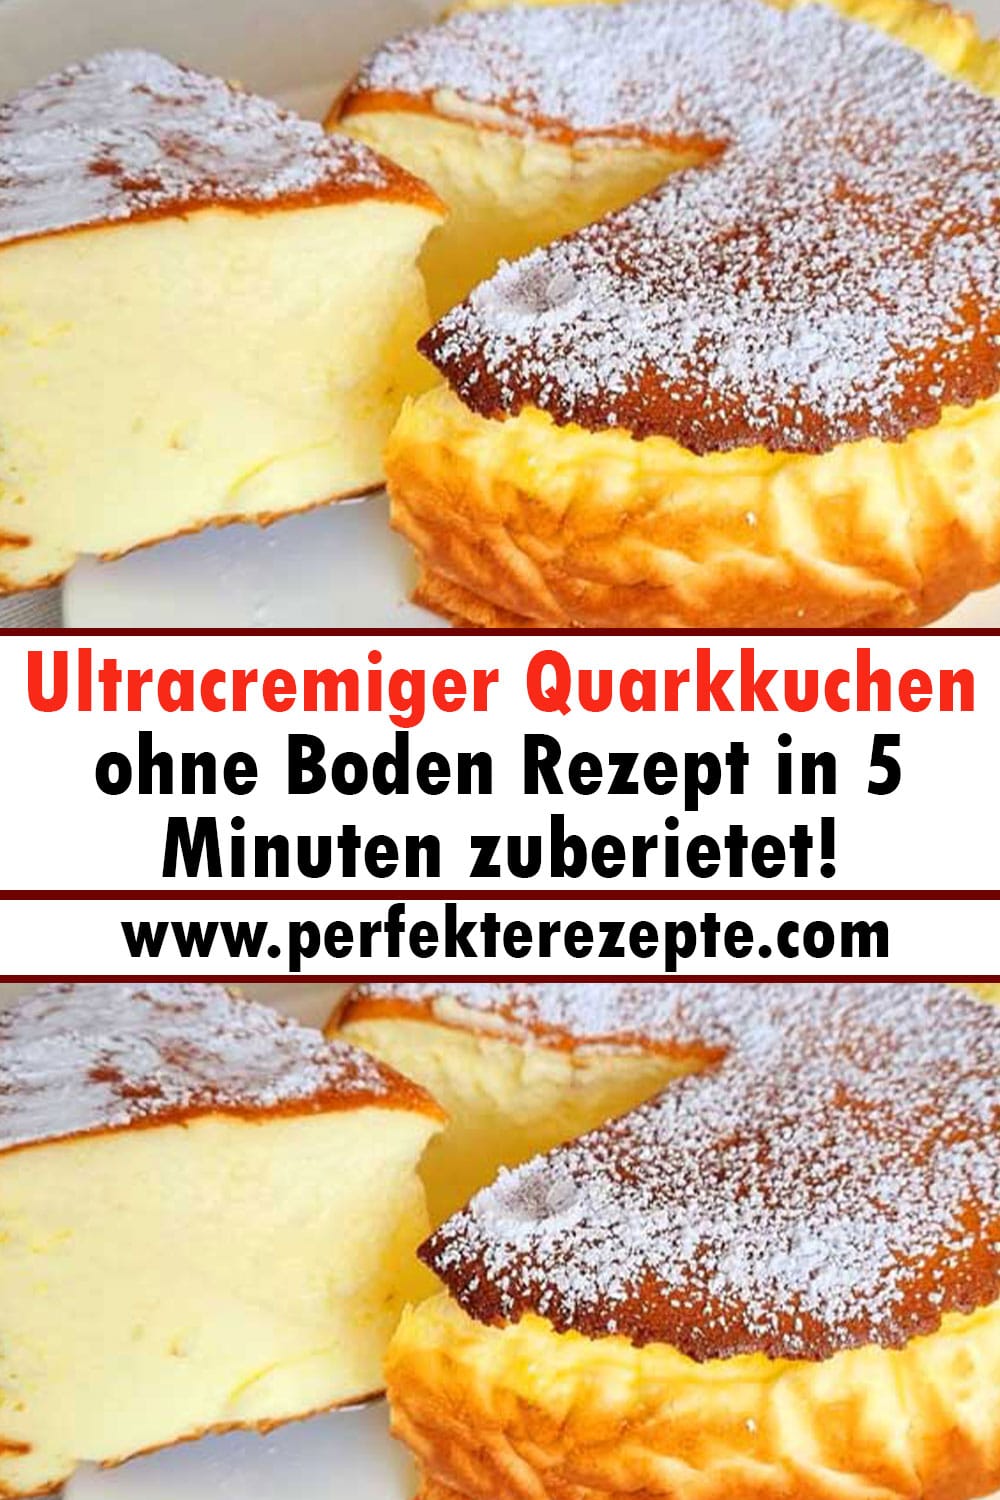 Ultracremiger Quarkkuchen ohne Boden Rezept in 5 Minuten zuberietet!